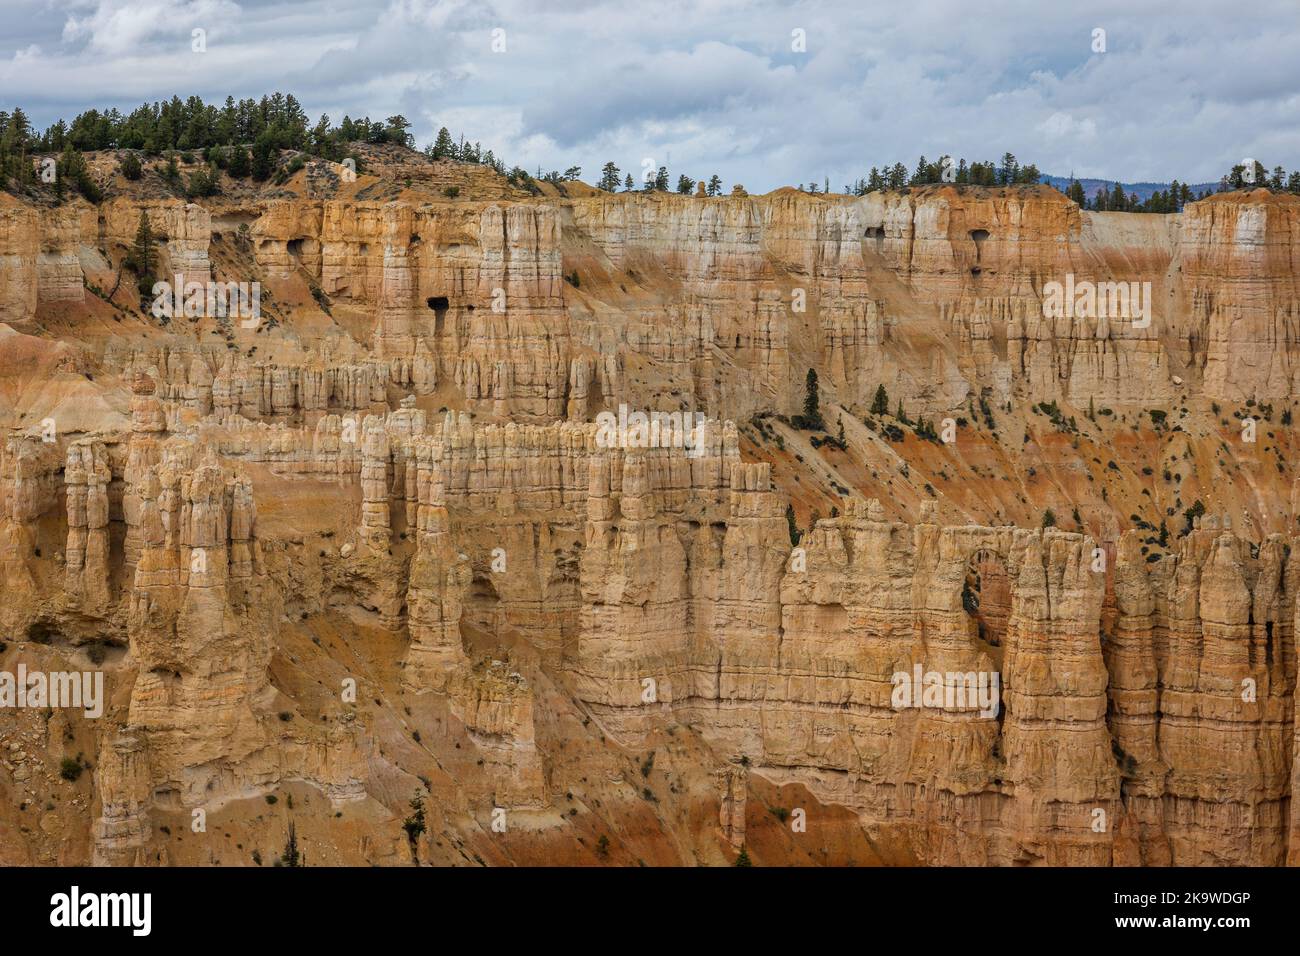 Il Bryce Canyon, nello Utah, è famoso per le sue formazioni rocciose geologiche. A causa del congelamento e dello scongelamento, le formazioni calcaree e arenaria sono lentamente eriche Foto Stock